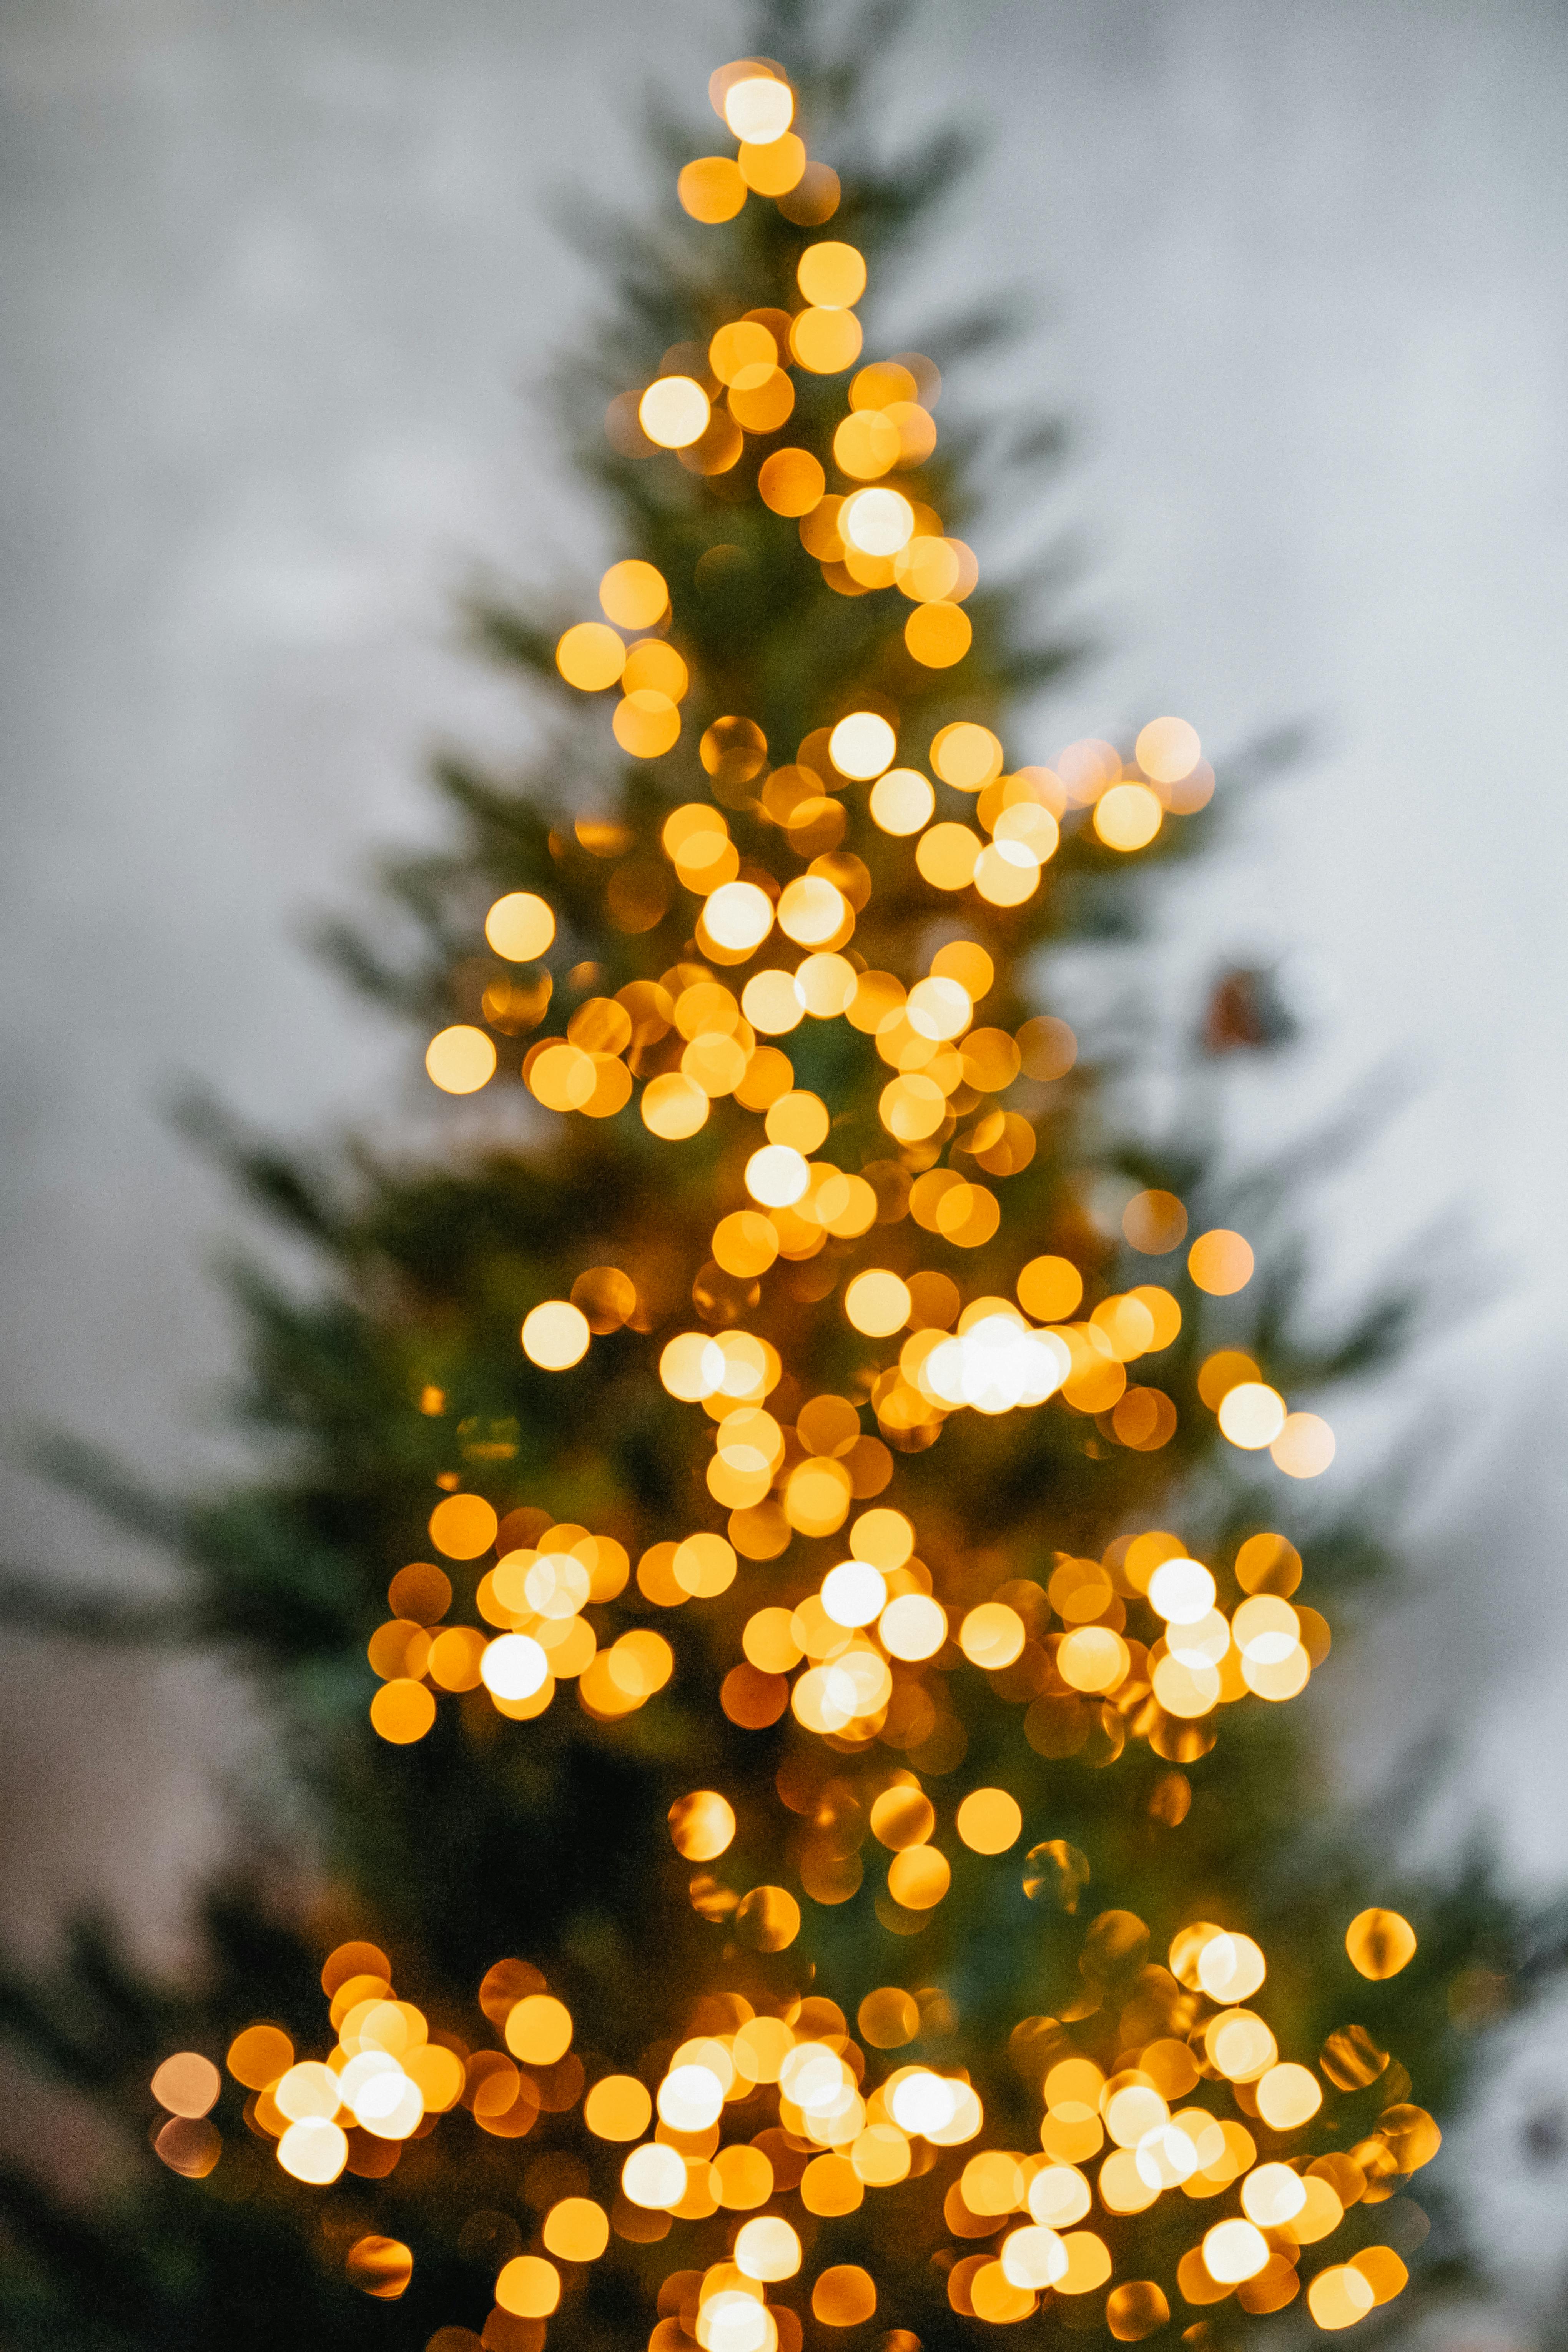 Tải về ngay hình nền cây thông Giáng sinh miễn phí từ Pexels. Những hình ảnh này sẽ giúp bạn trang trí không gian sống của mình thêm phần sinh động và lãng mạn trong mùa lễ hội. Hãy để image này thể hiện sự đậm đà của niềm vui và niềm hy vọng trong những ngày đặc biệt nhất của năm nhé!